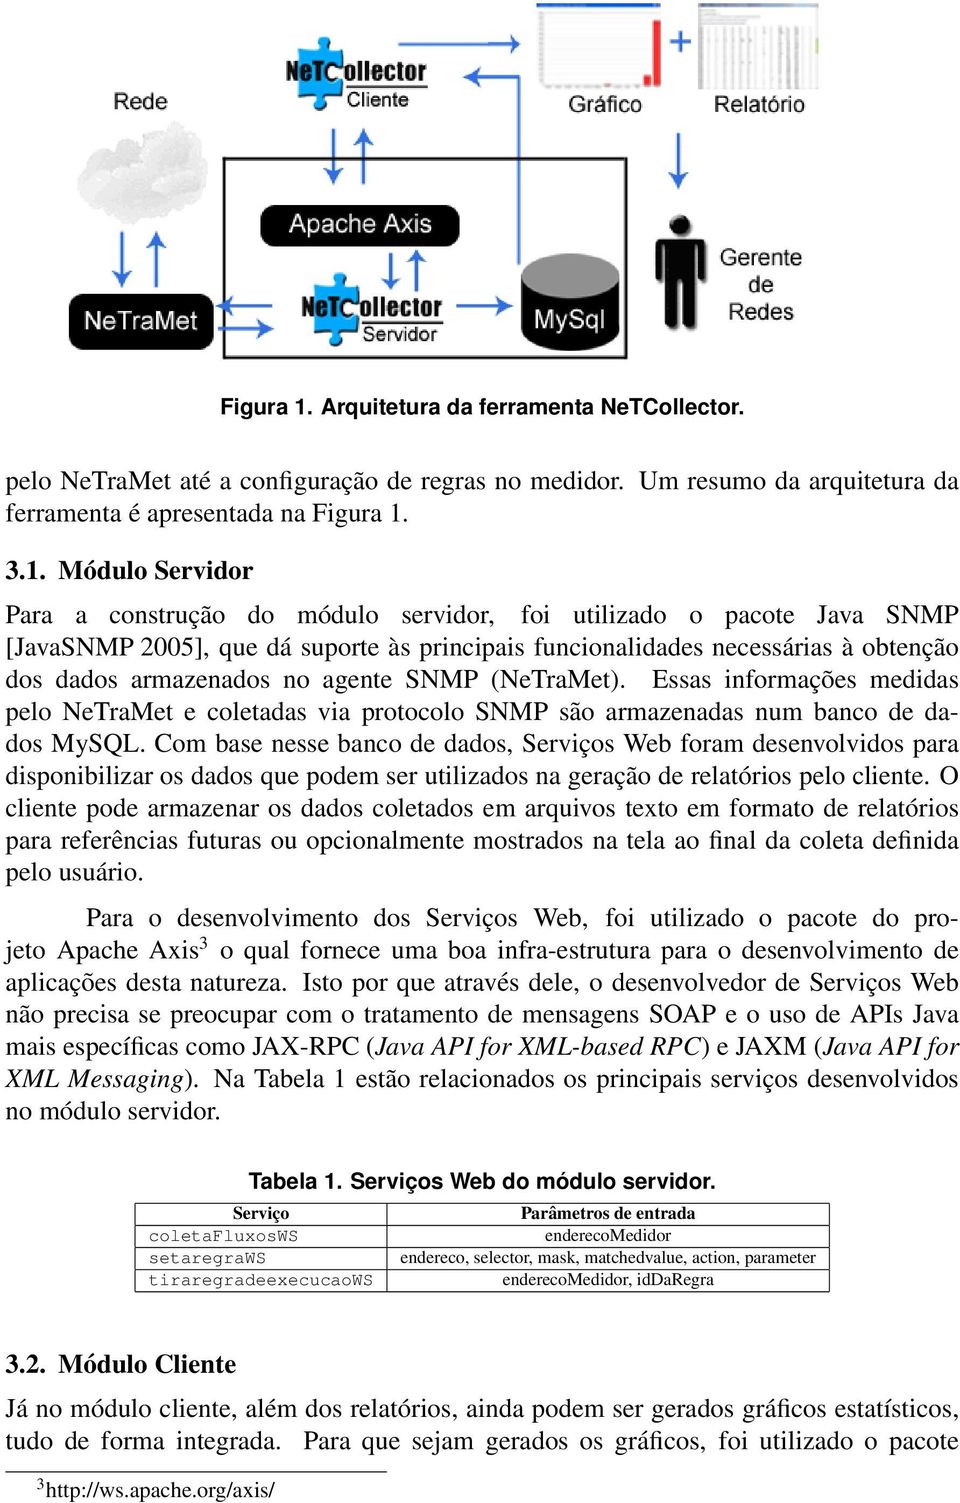 Módulo Servidor Para a construção do módulo servidor, foi utilizado o pacote Java SNMP [JavaSNMP 2005], que dá suporte às principais funcionalidades necessárias à obtenção dos dados armazenados no